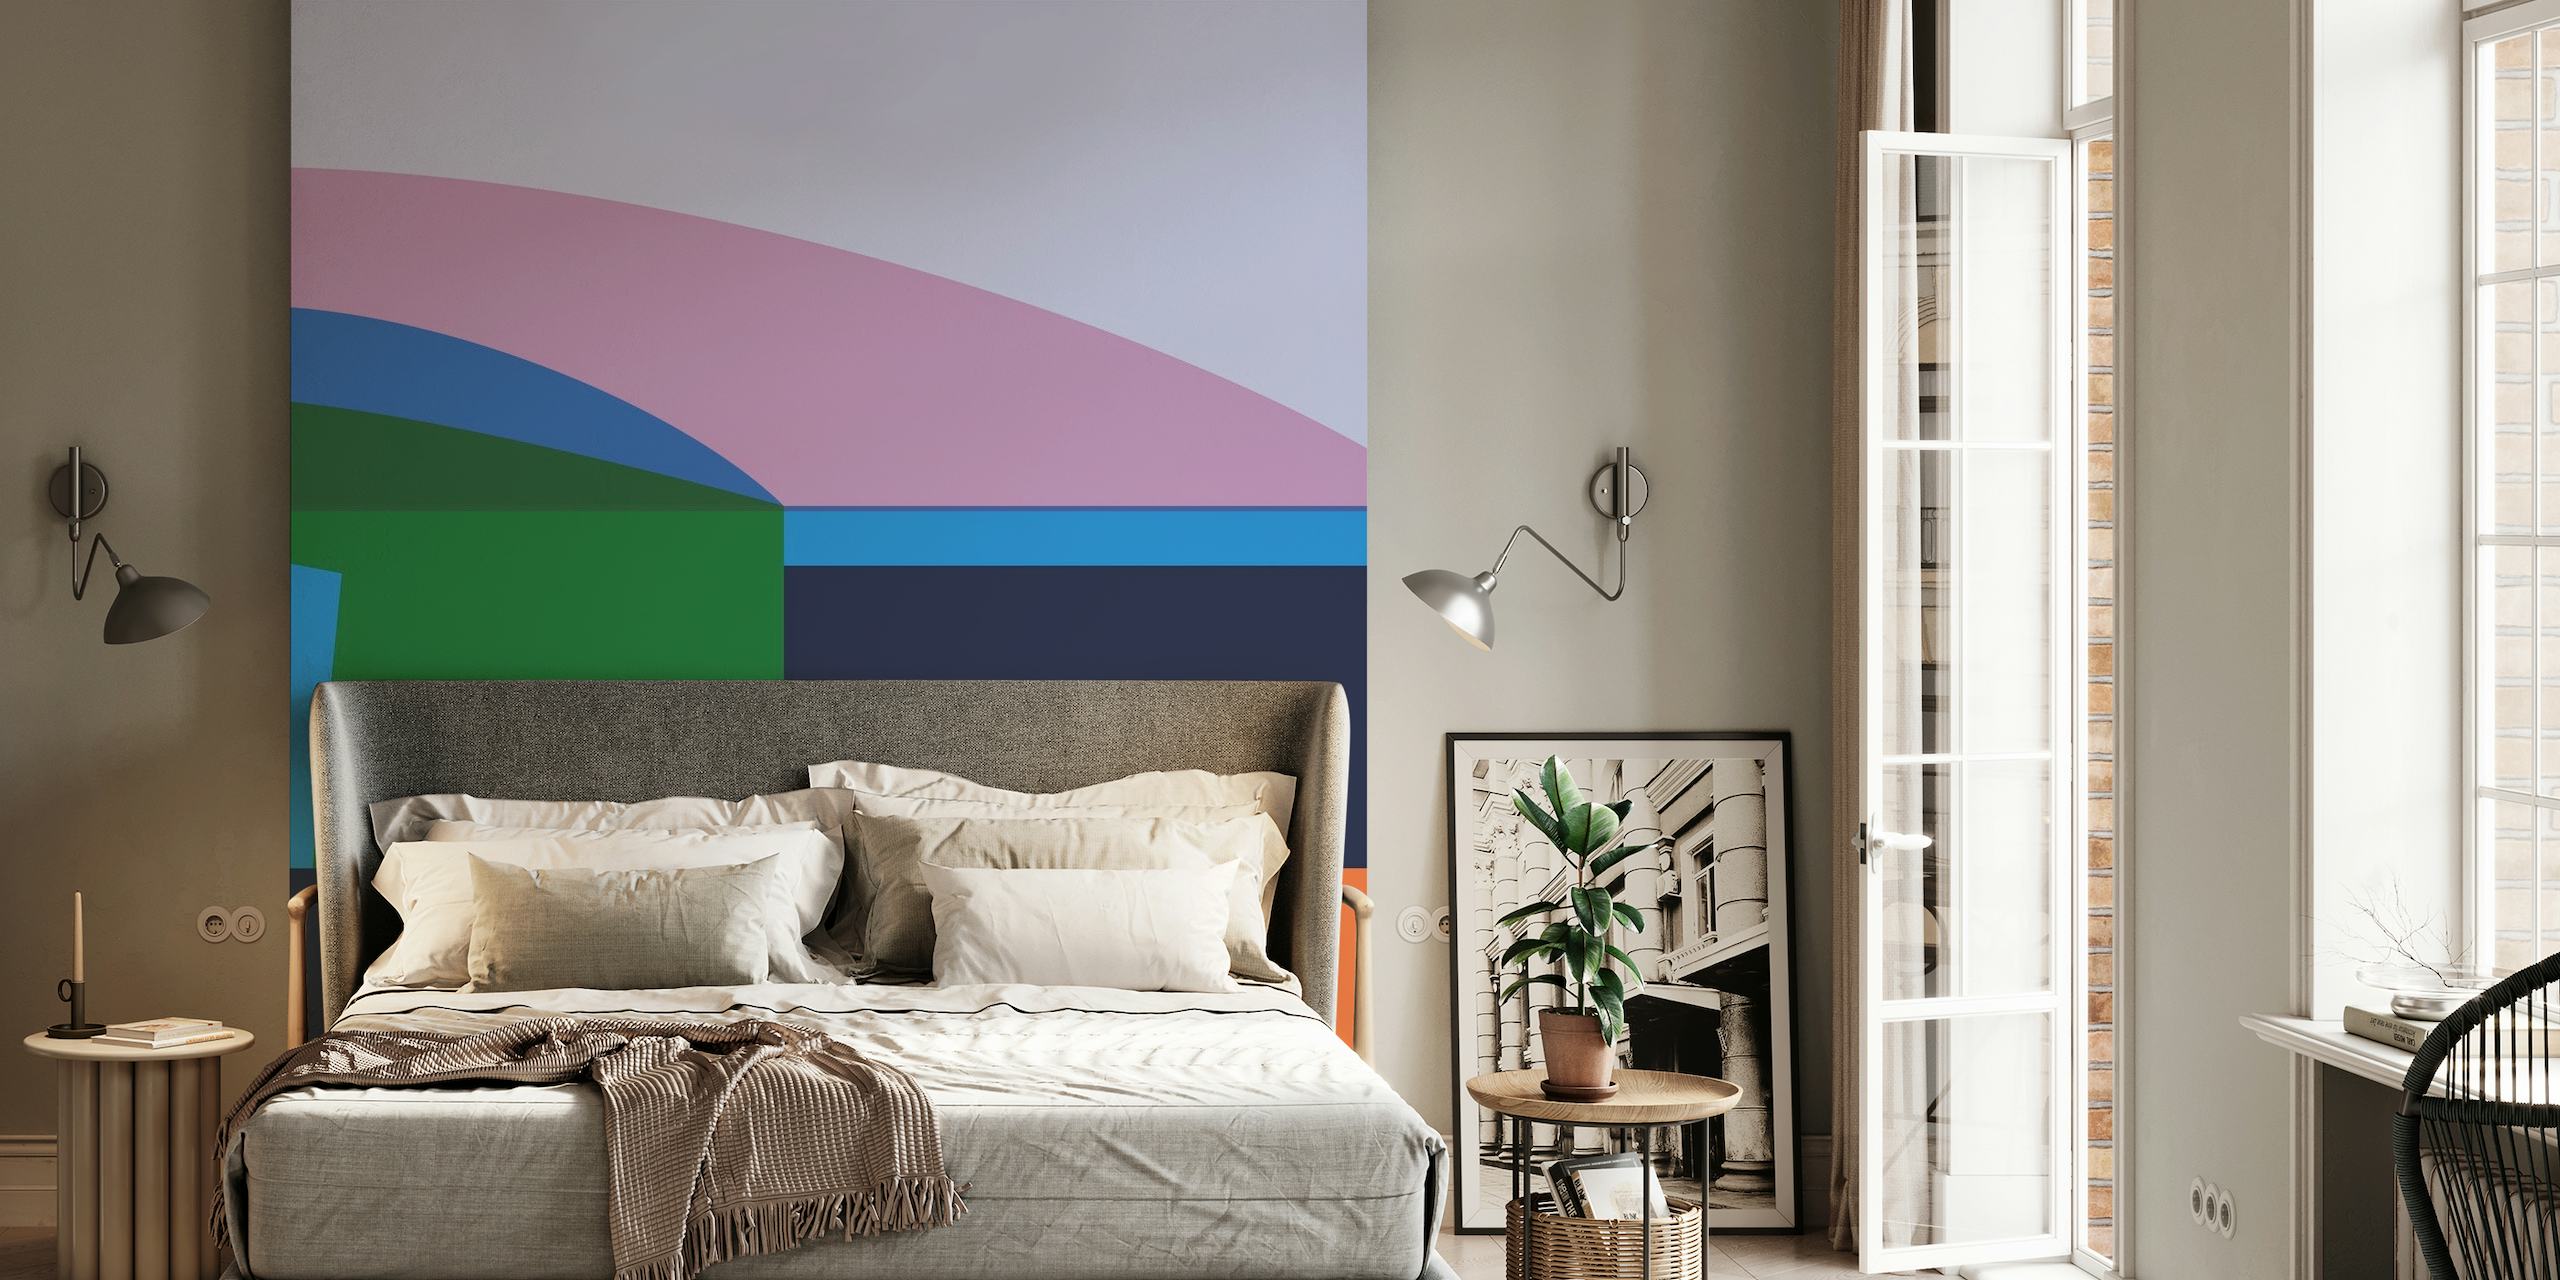 Abstrakt geometrisk tapet med lugnande färgblock i nyanser av rosa, grönt, blått och orange